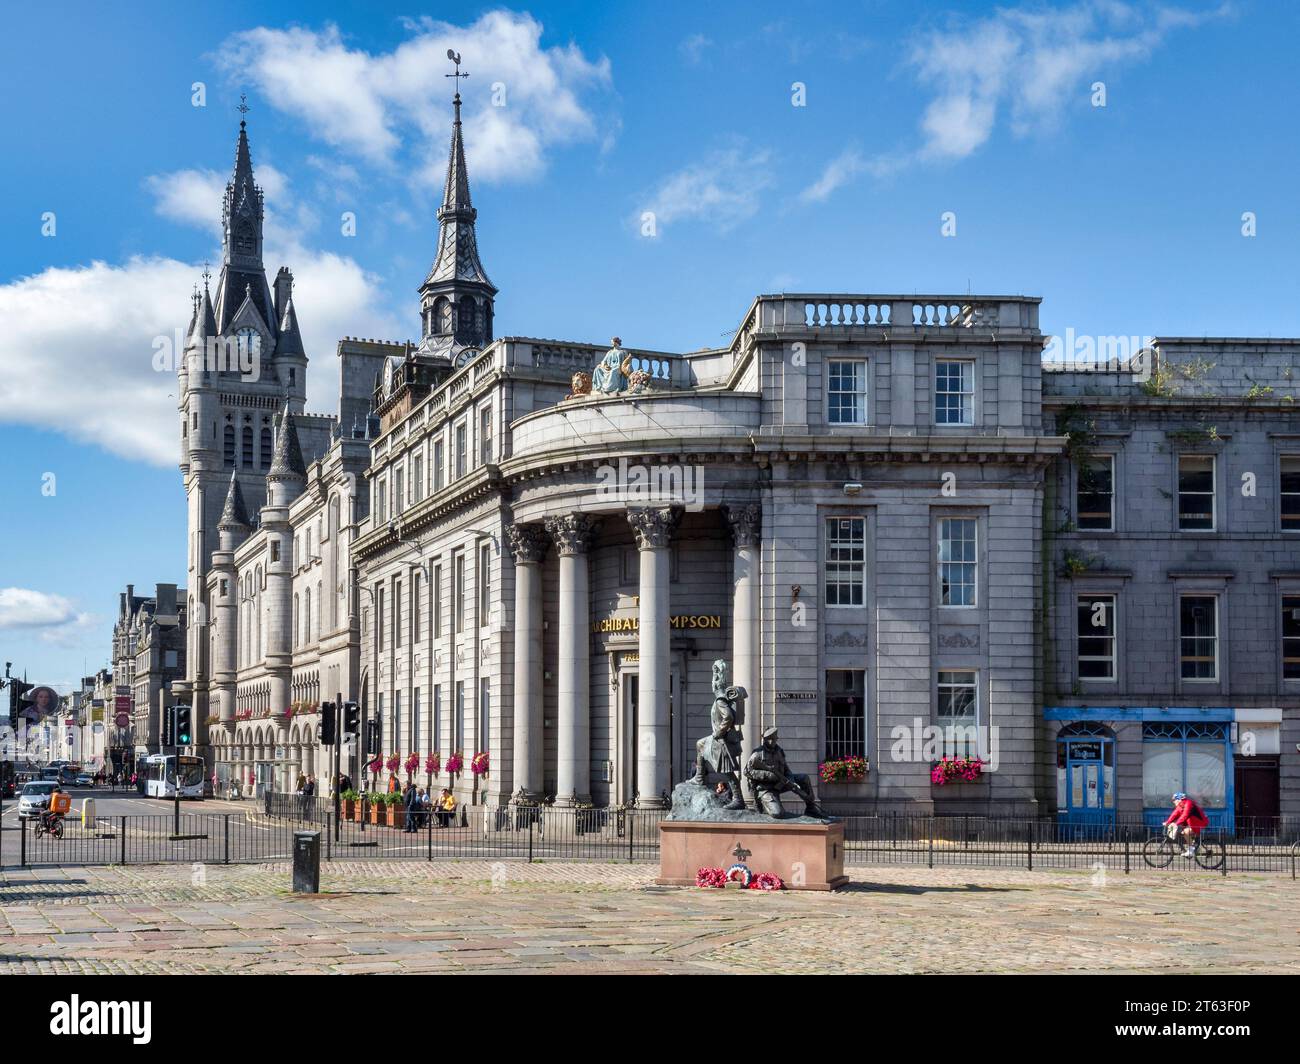 13 septembre 2022 : Aberdeen, Écosse, Royaume-Uni - vue depuis la place du marché de l'architecture en granit pour laquelle la ville est célèbre... Banque D'Images